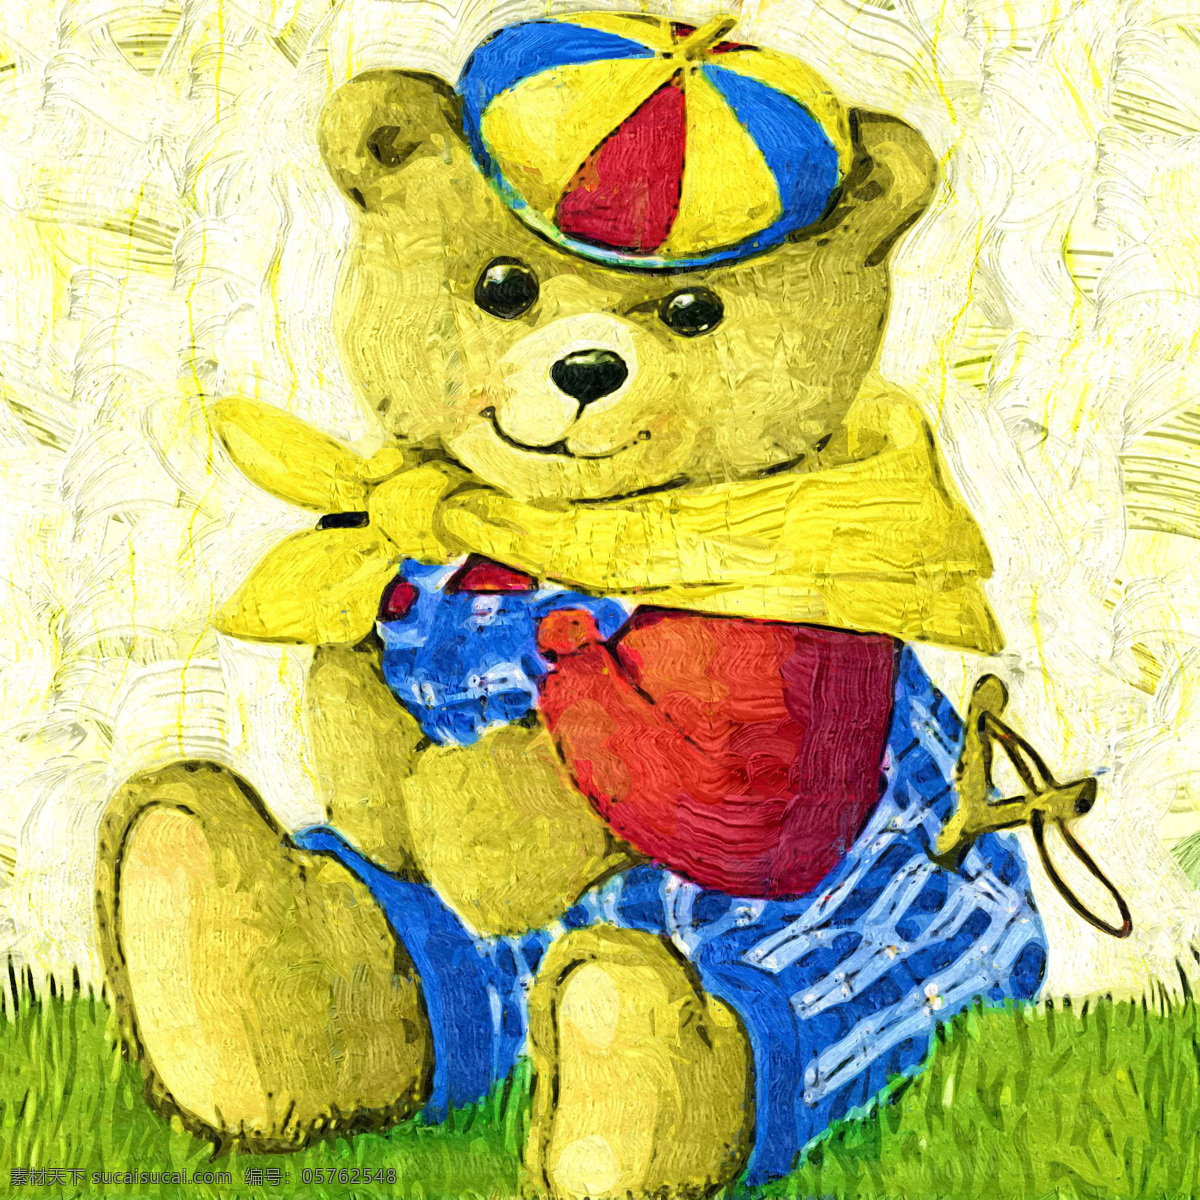 泰迪 熊 儿童画 绘本 绘画 绘画书法 卡通 卡通画 手绘 泰迪熊 油画 装饰画 无框画 文化艺术 家居装饰素材